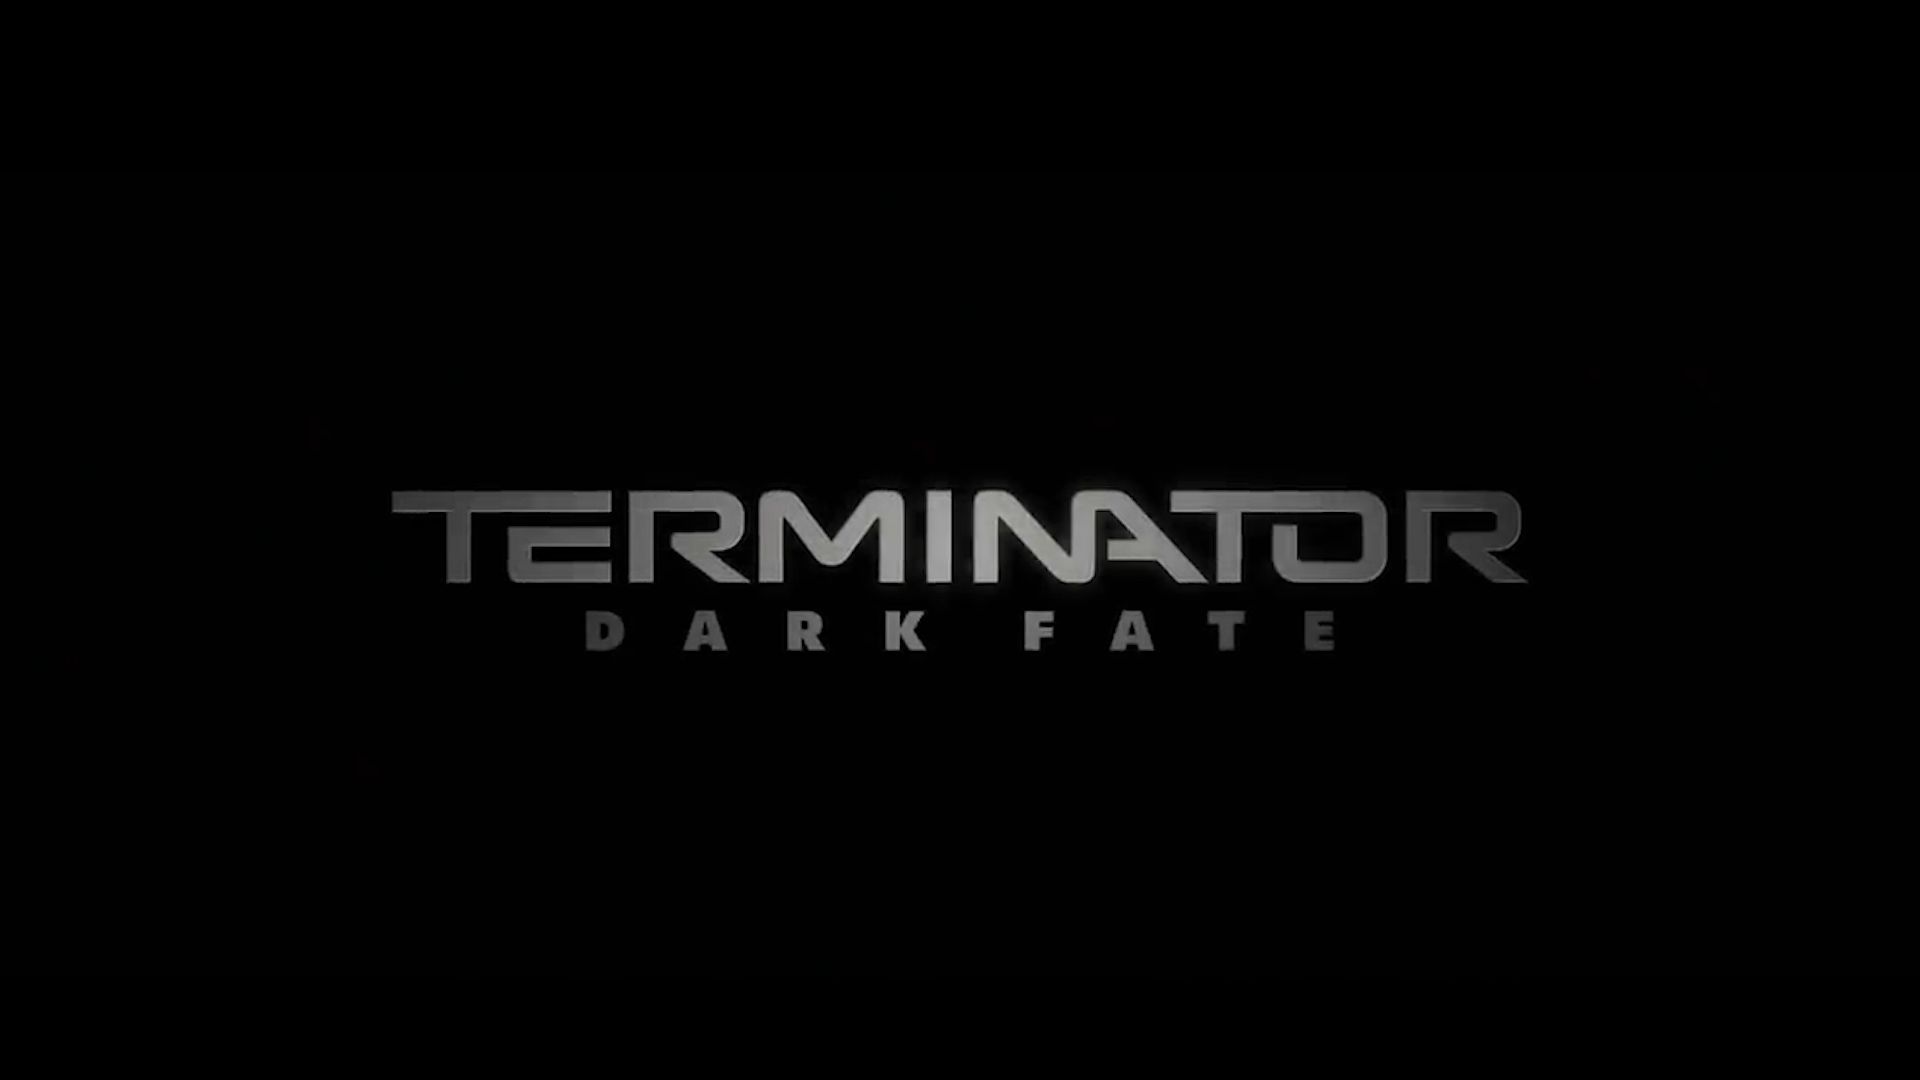 نابودگر: سرنوشت تاریک (Terminator Dark Fate)